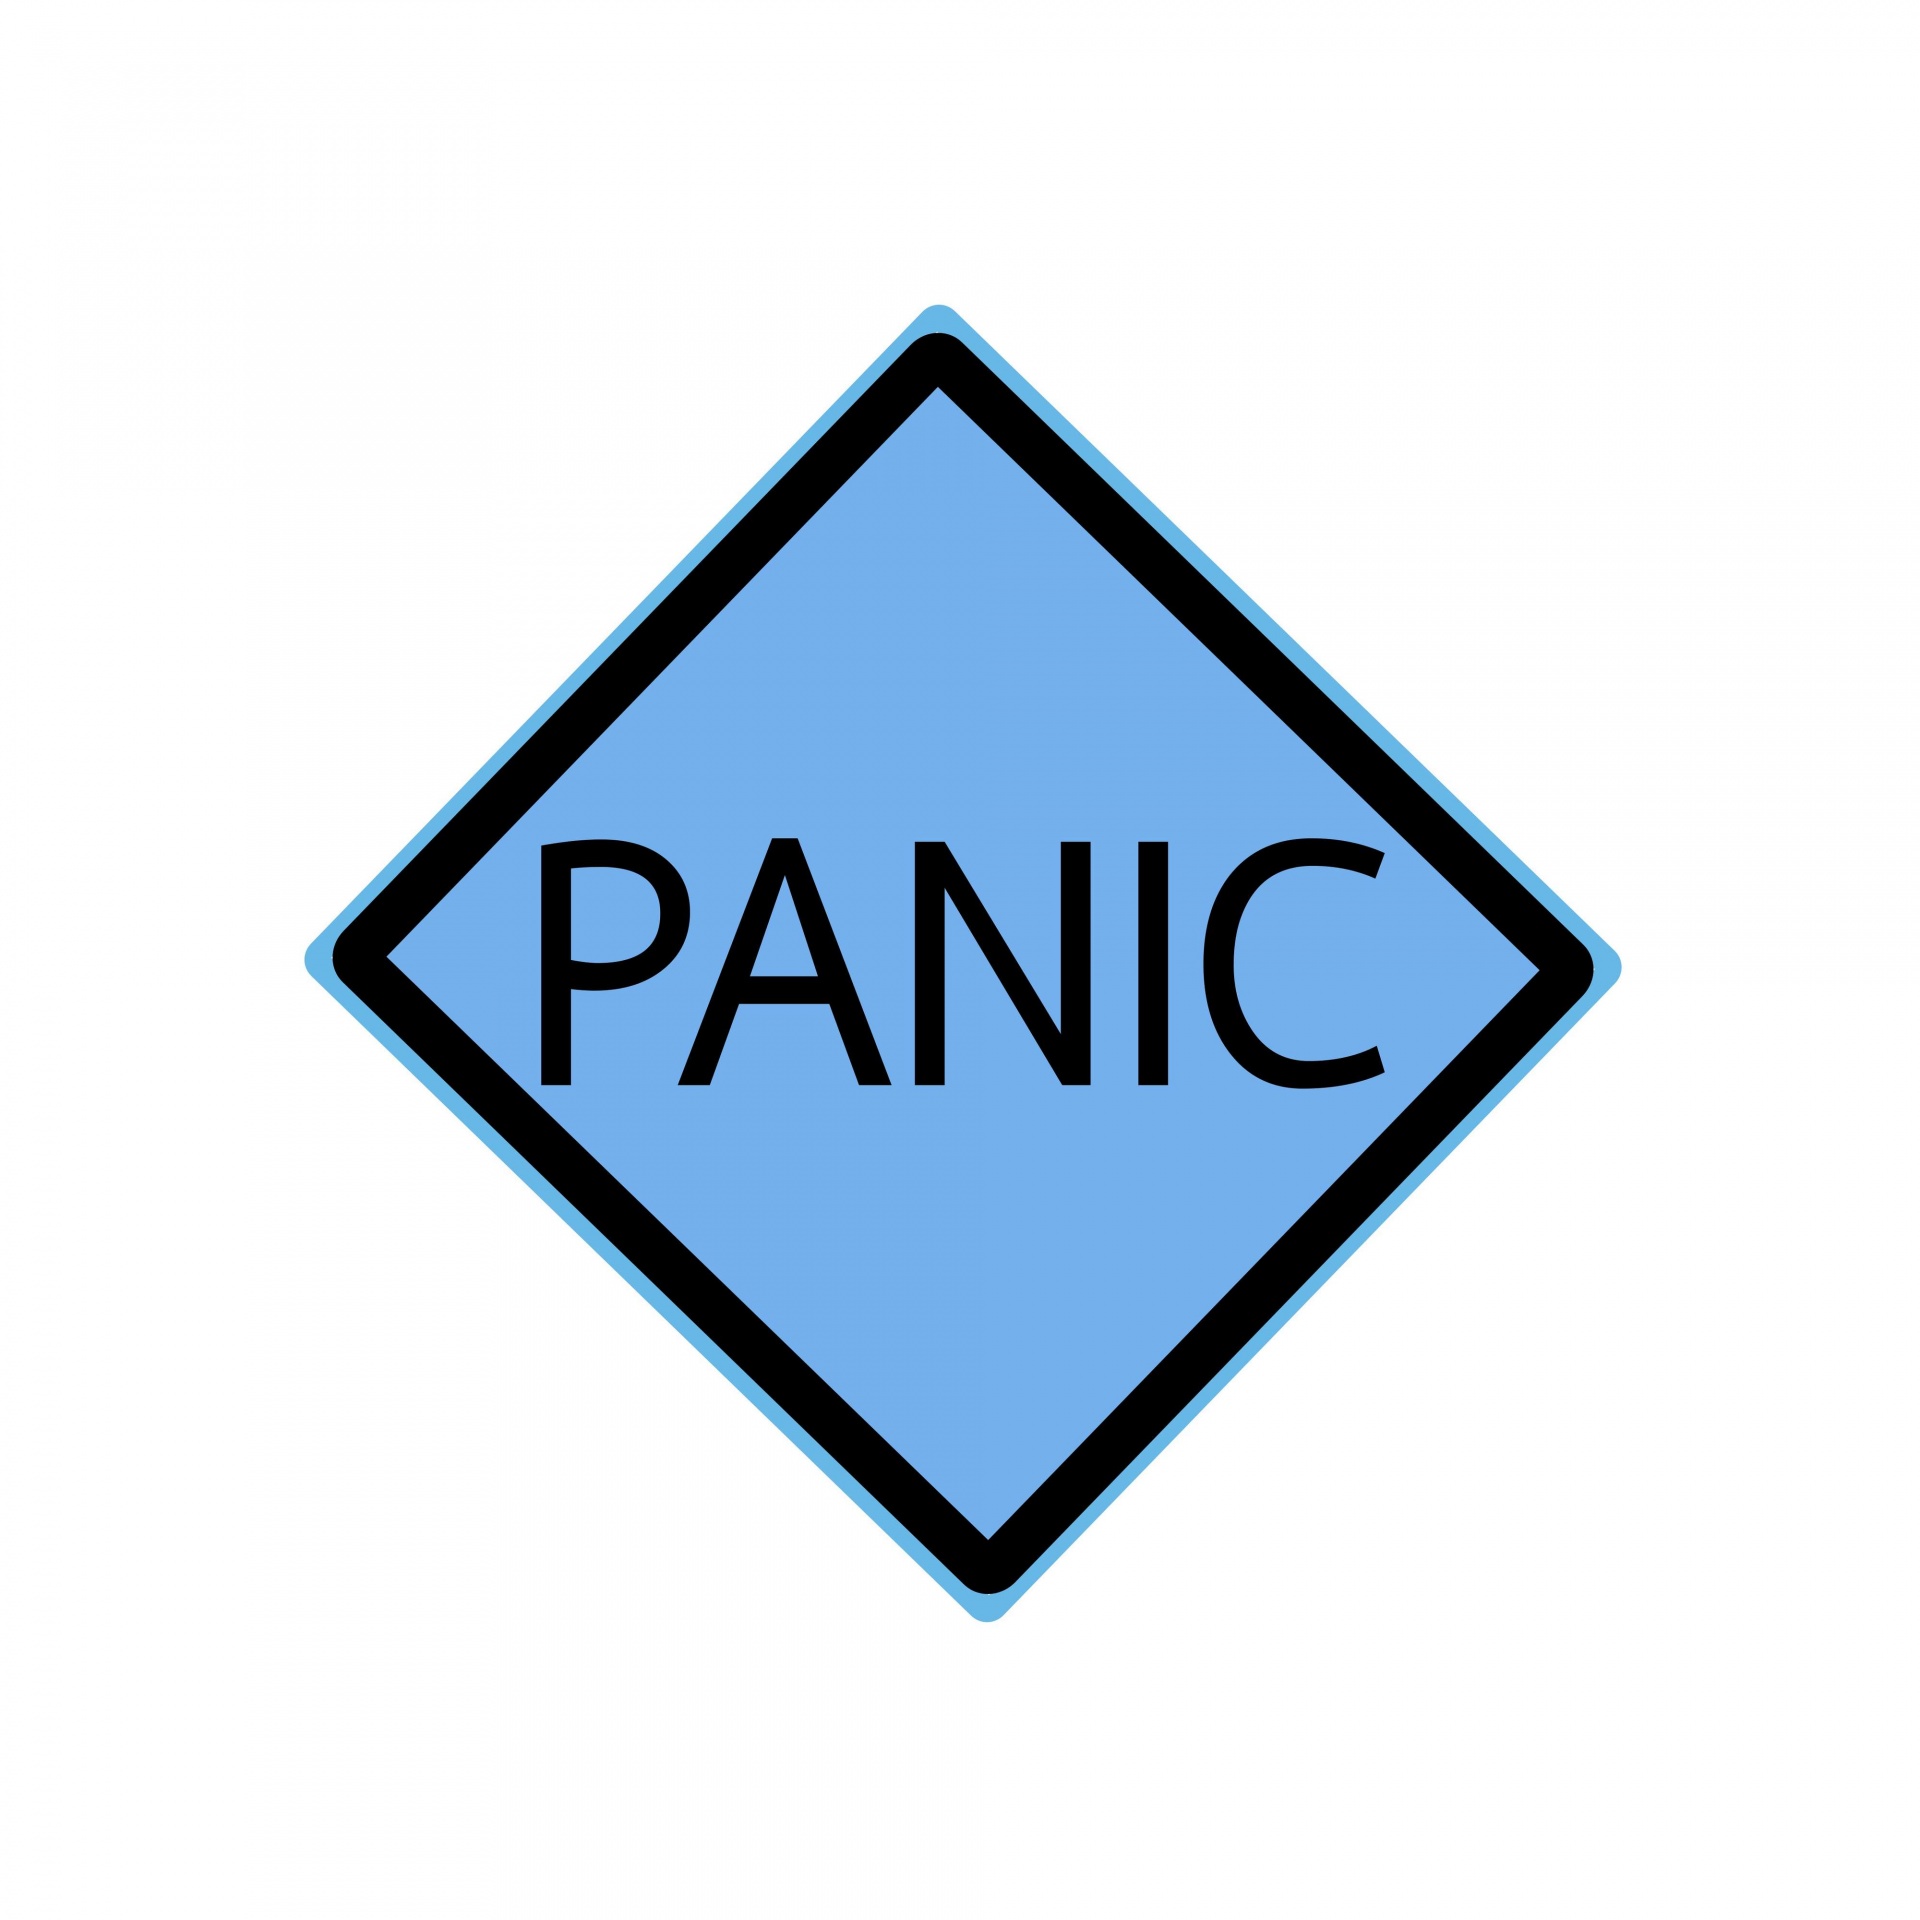 Texto de sello negro de pánico en azul